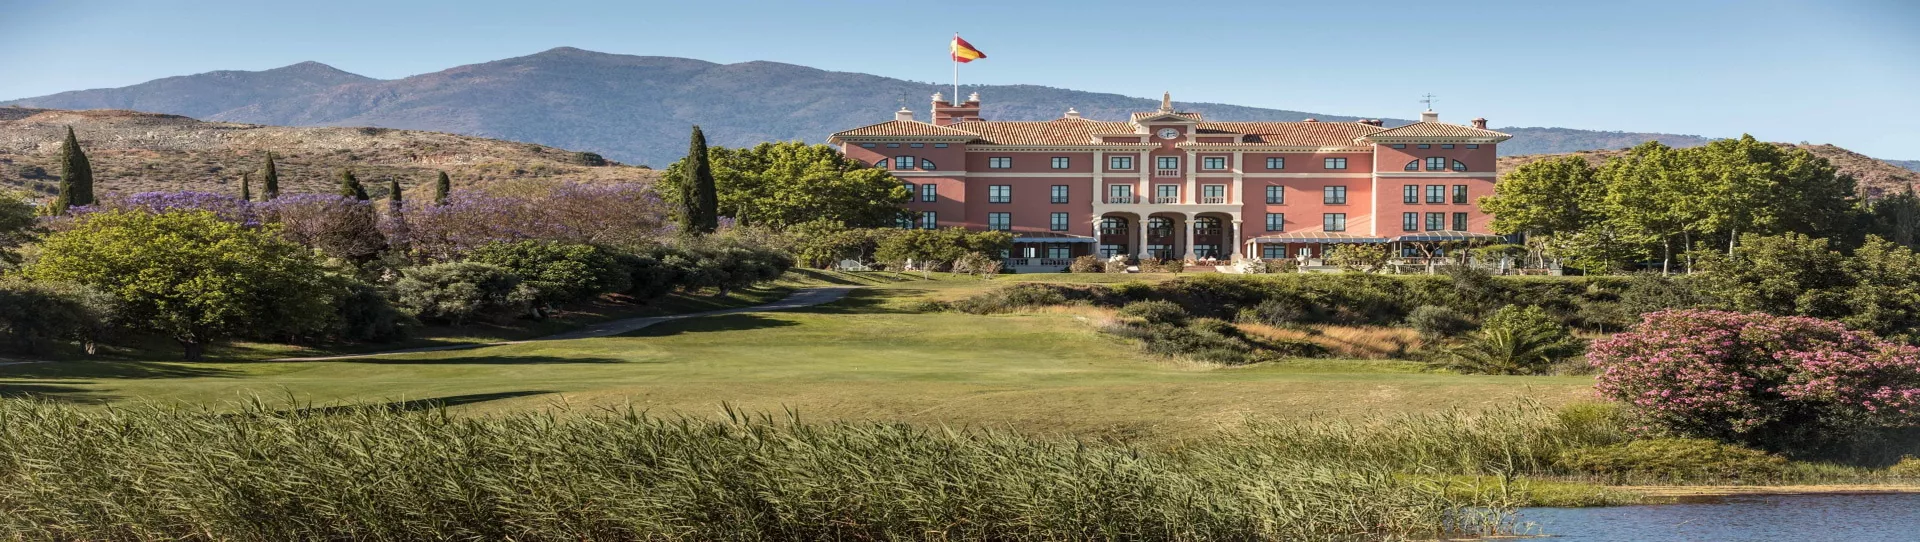 Spain golf holidays - Anantara Villa Padierna Palace Hotel G.L. - Photo 1